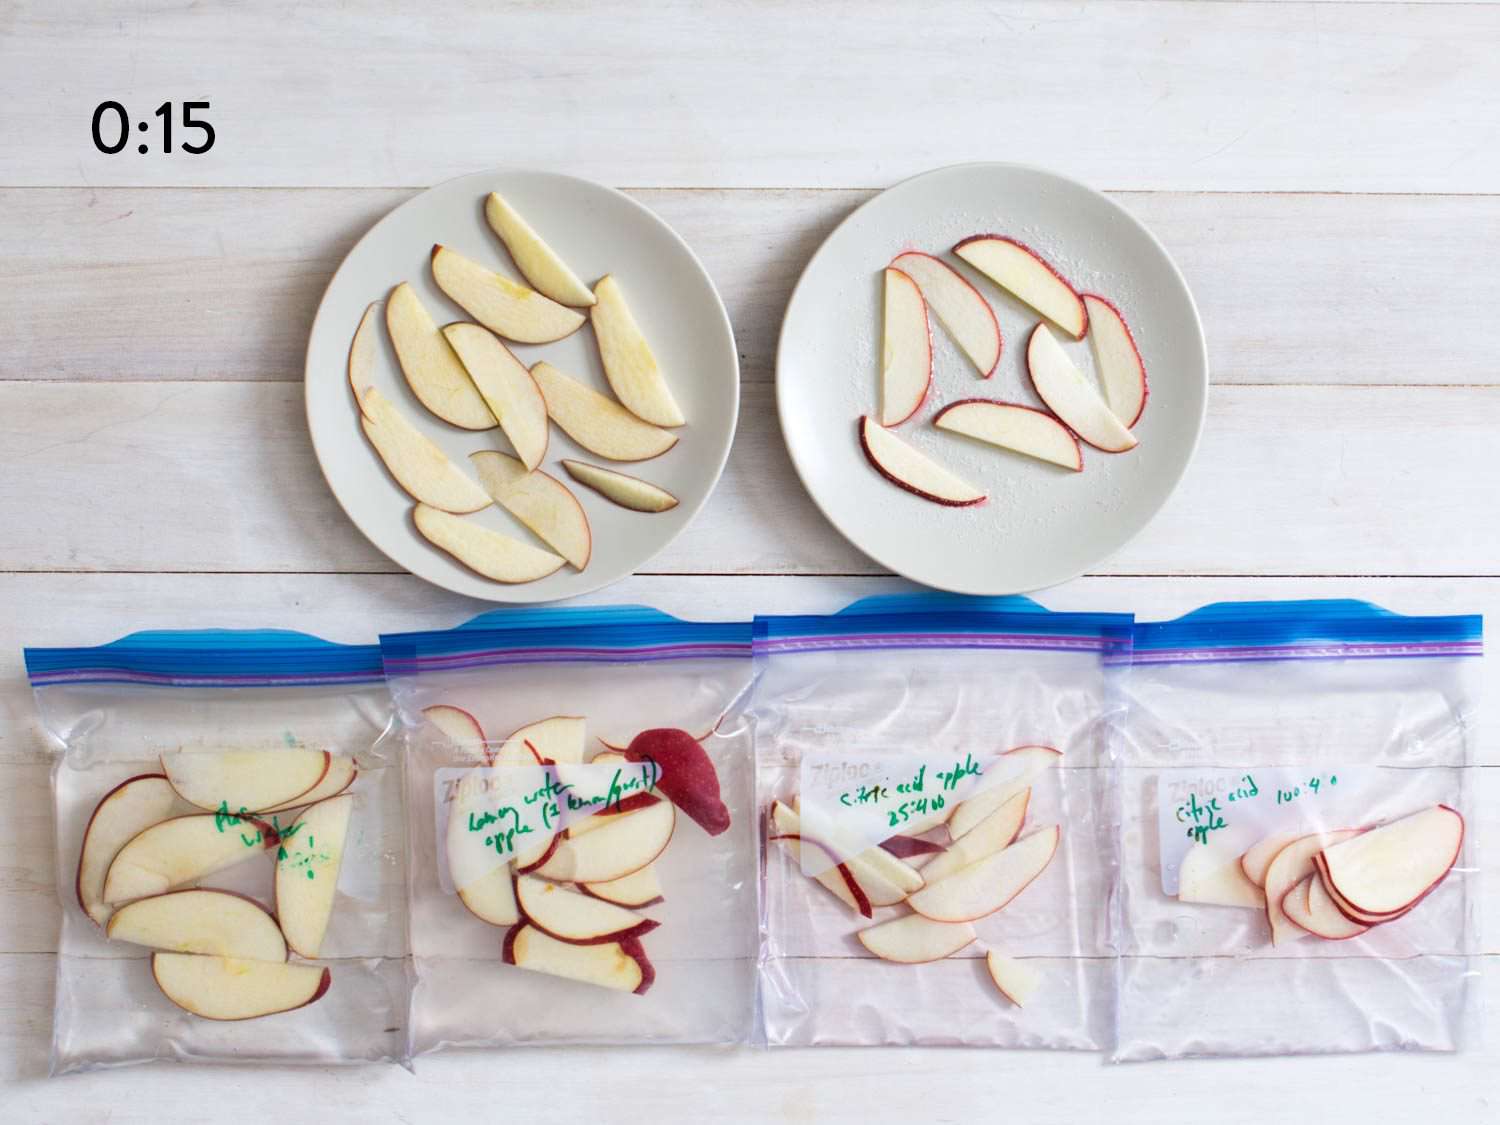 15秒后比较袋装切好的苹果。